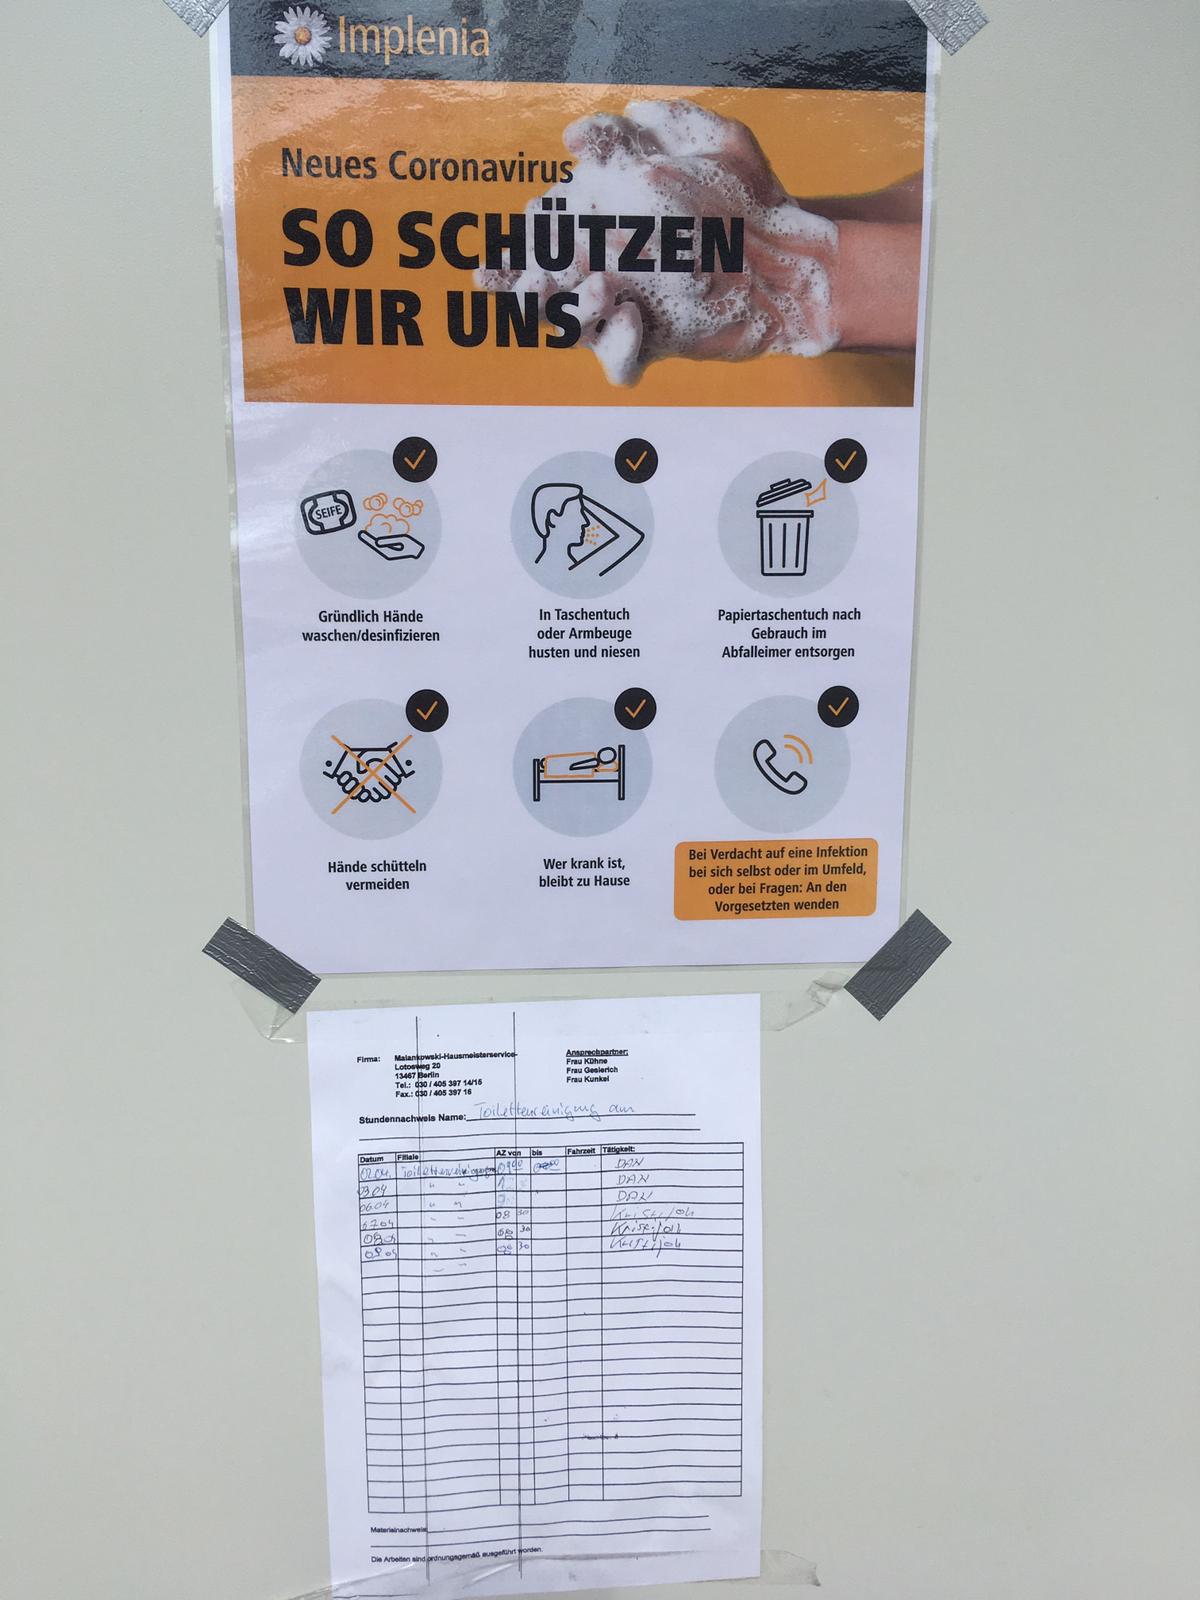 Informazione e igiene: oltre ai poster informativi affissi ovunque, abbiamo anche aumentato gli intervalli di pulizia dei servizi igienici.